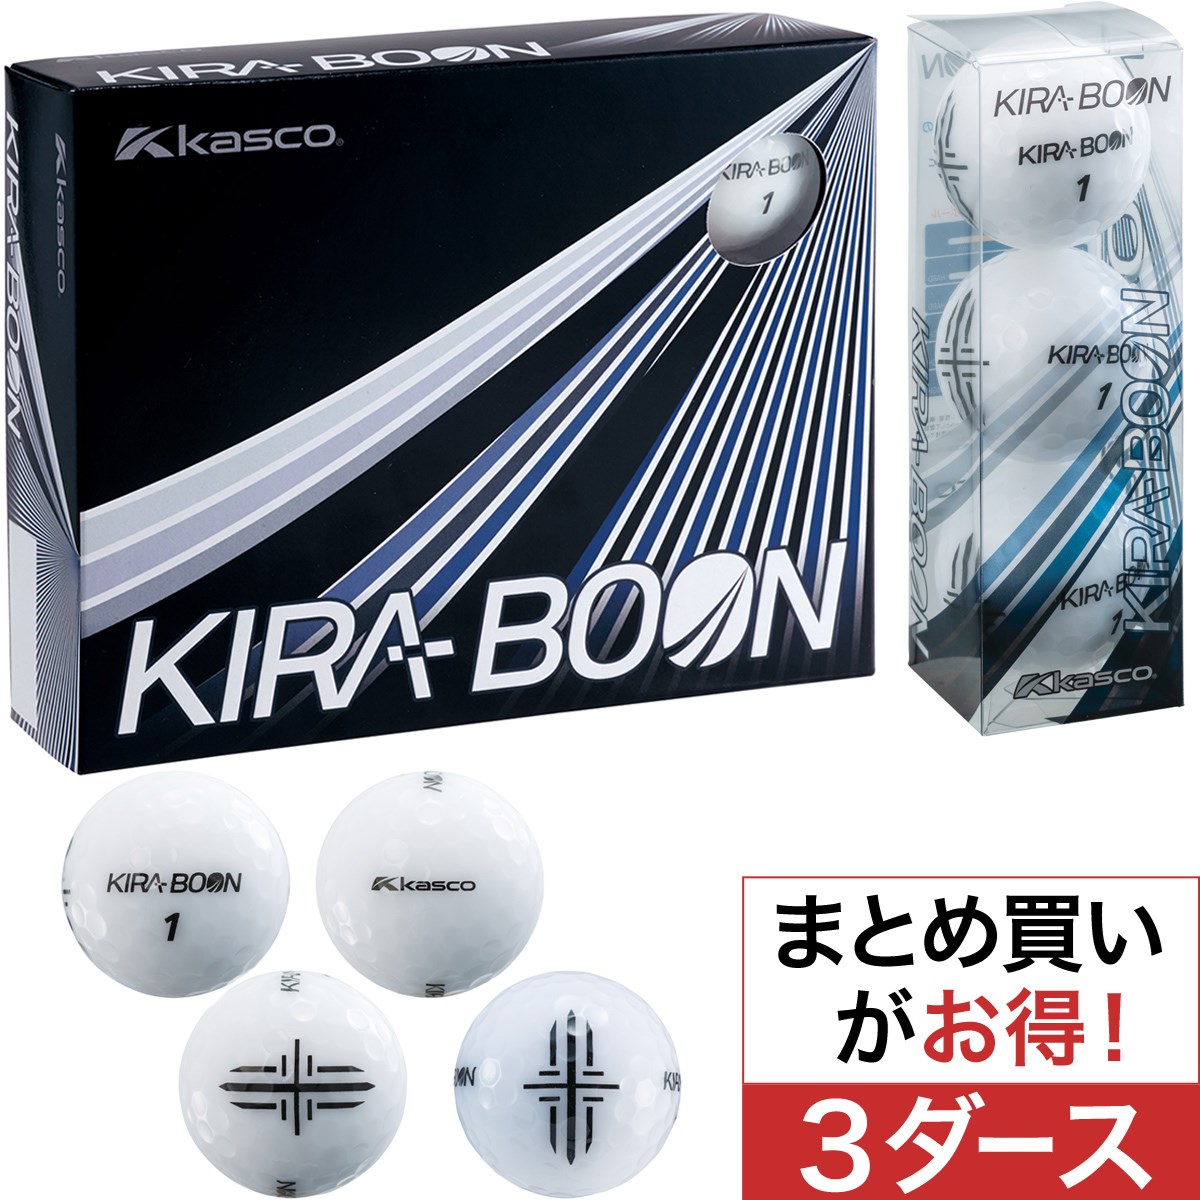 キャスコ(KASCO) KIRA BOON 矢印ターゲットマーク ボール 3ダースセット 